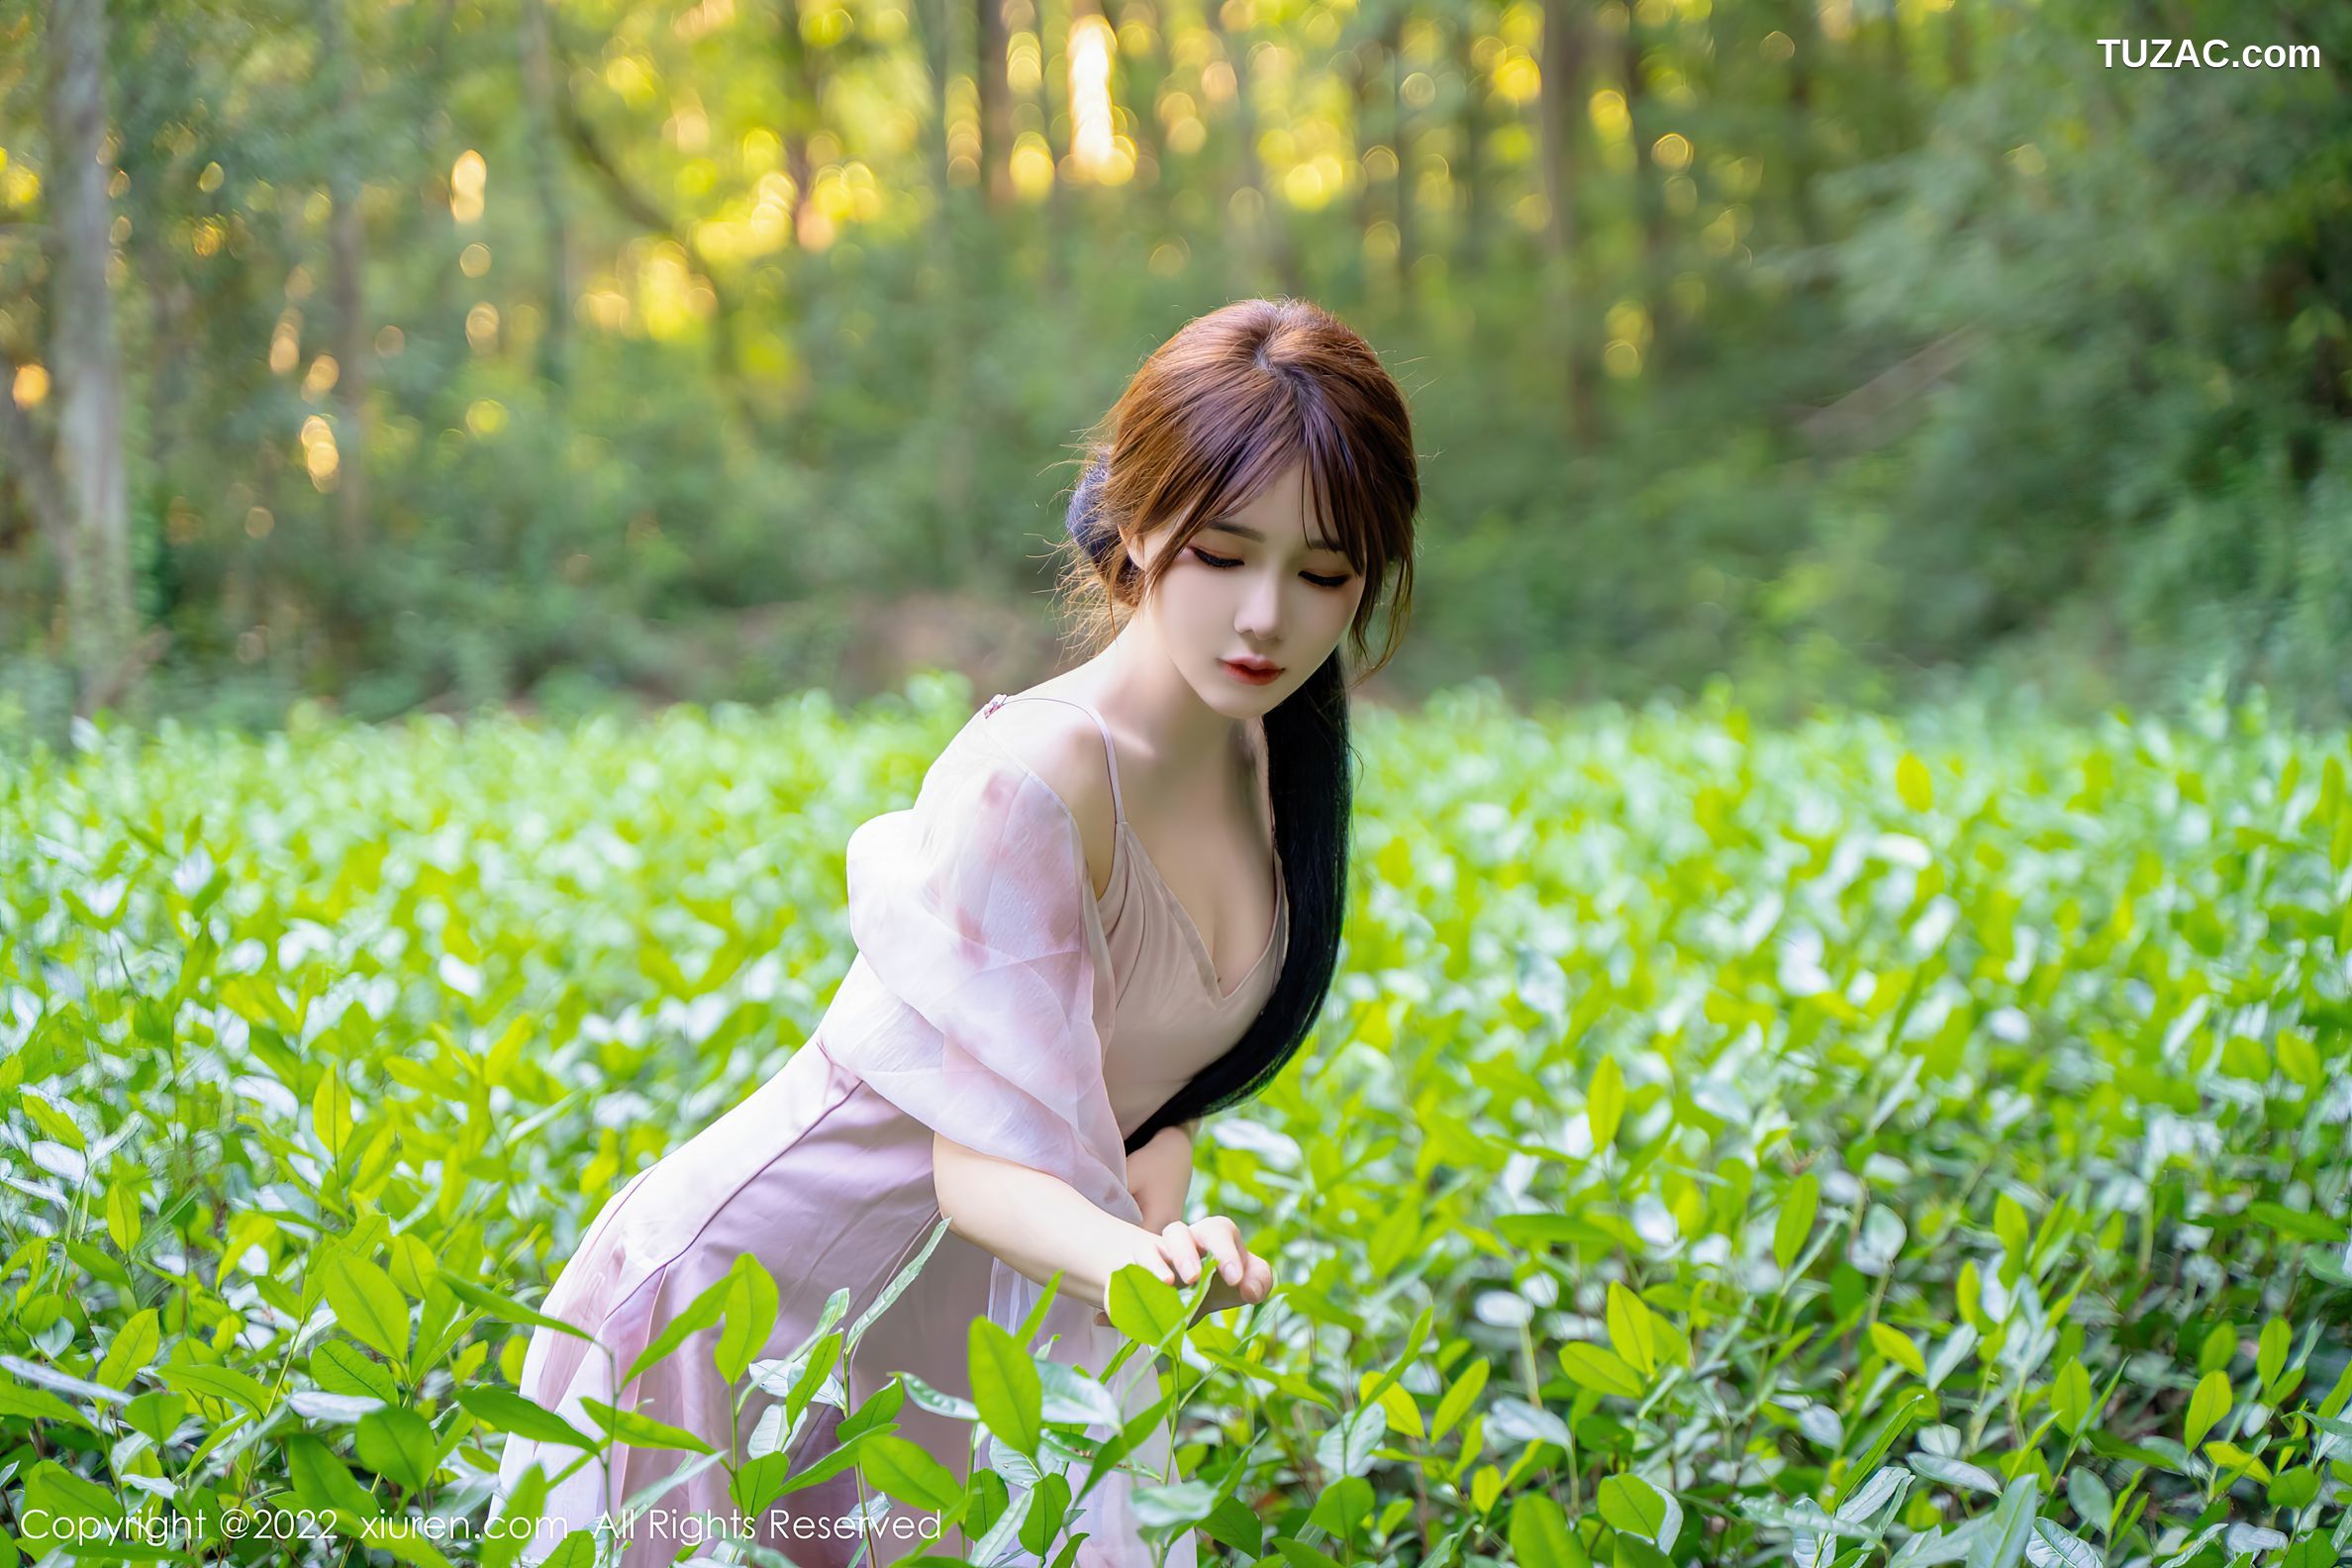 XiuRen-No.5690-婠婠么-林间嬉水的紫裙白裙双姝